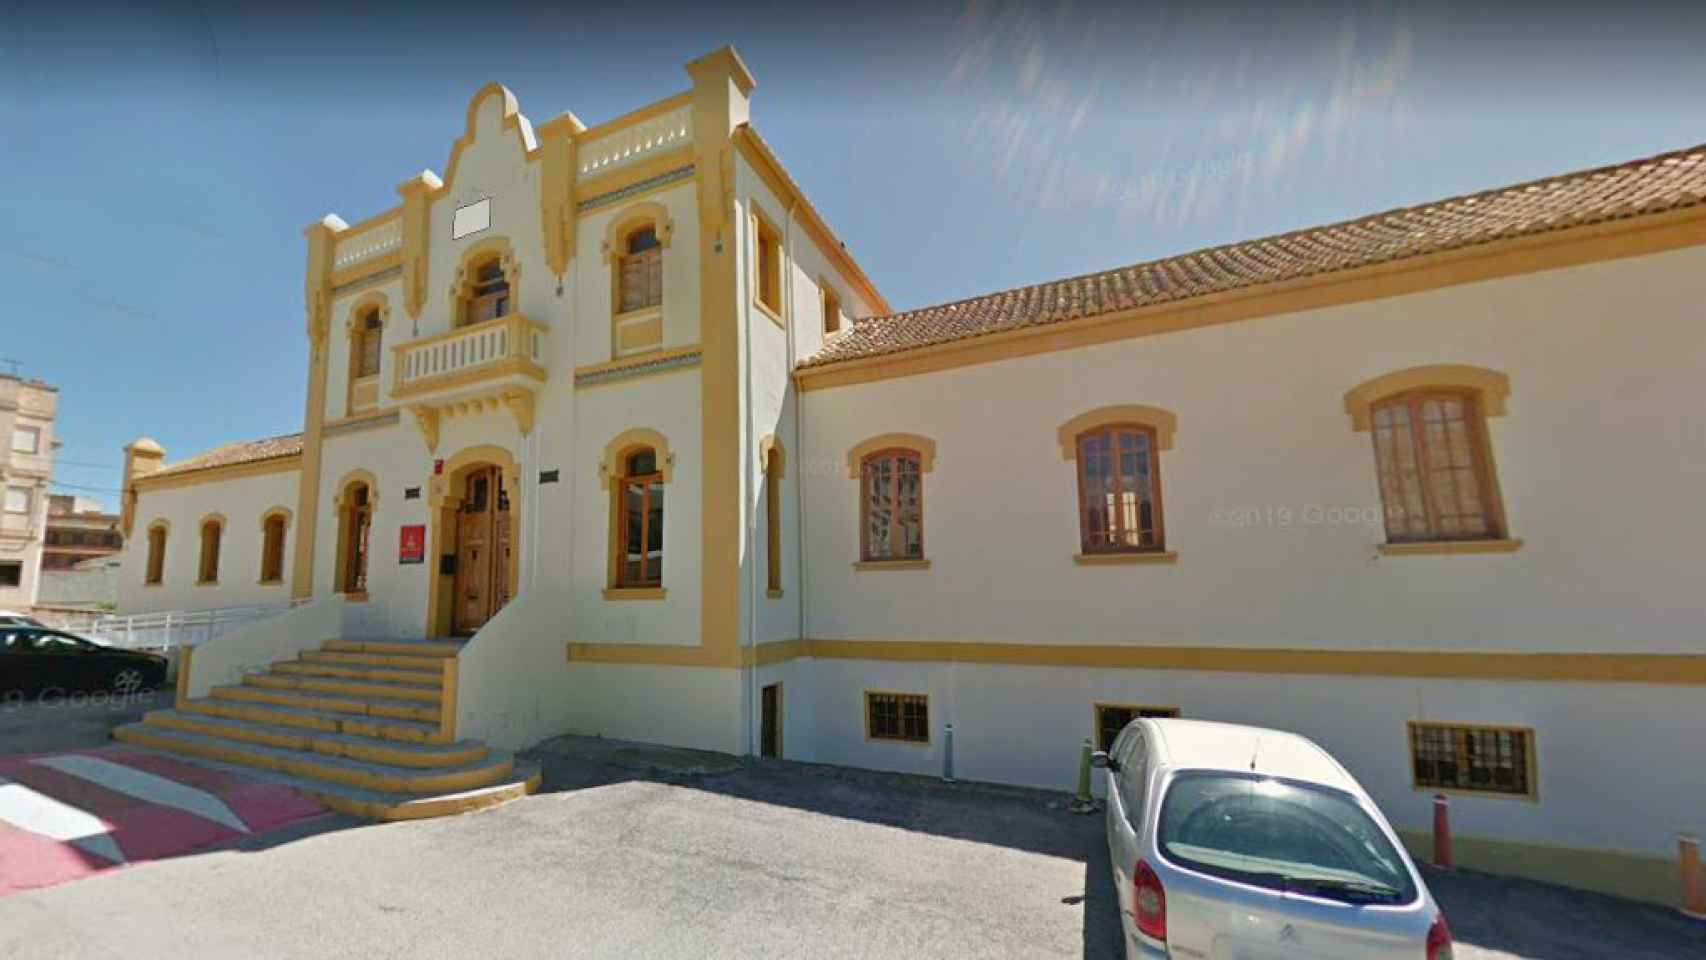 Residencia de la Tercera Edad de Chelva, Valencia, donde trabaja Nacho Palau.